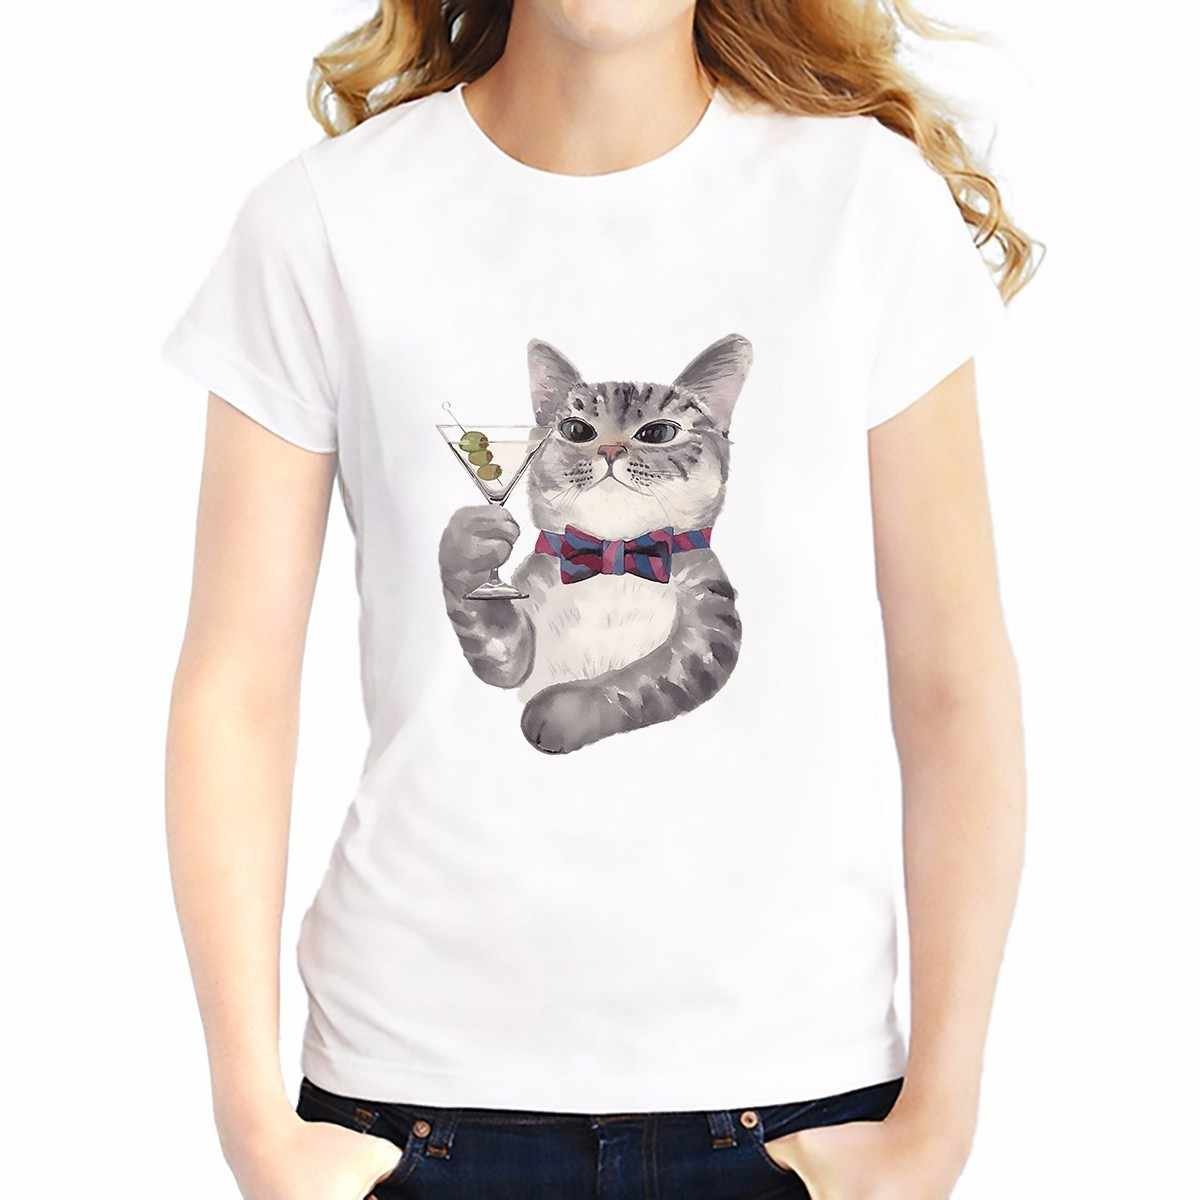 Милая майка. Милые котики на футболке. Милая футболка с котиком. Миленький котик на футболке. Кастом футболки милый с котиком.